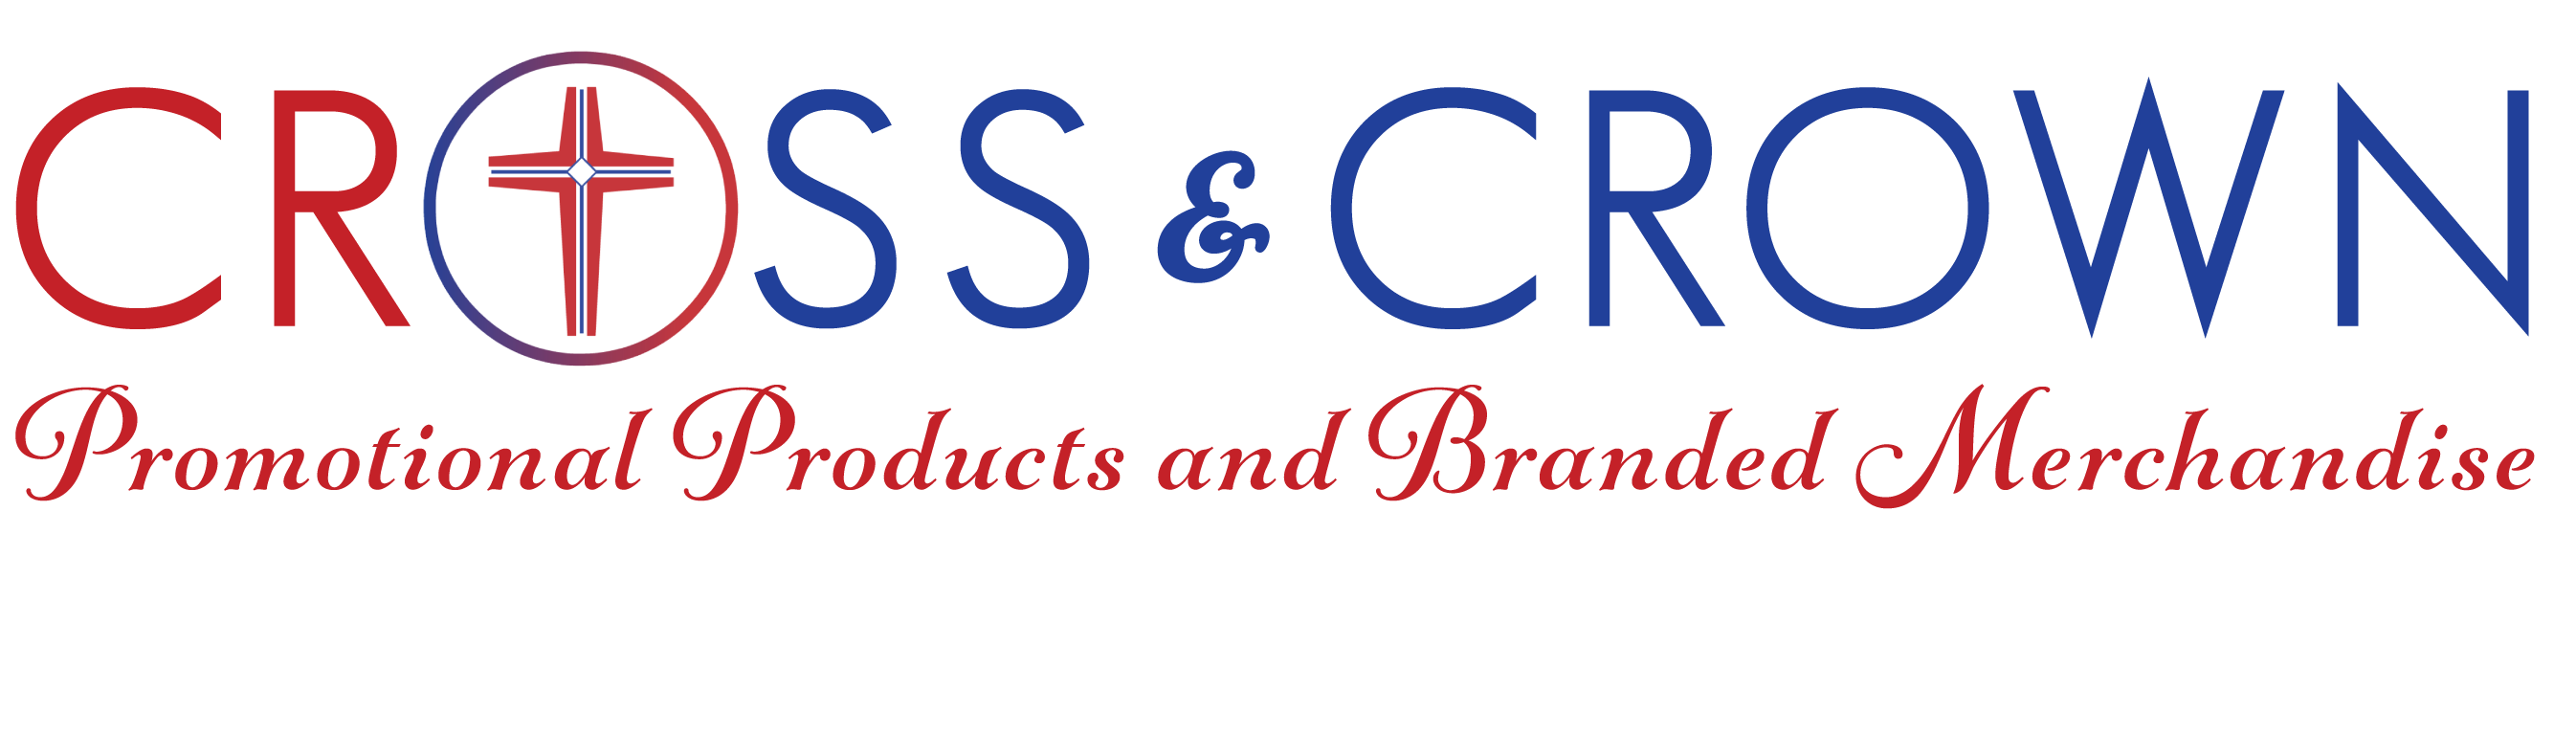 Cross & Crown's Logo